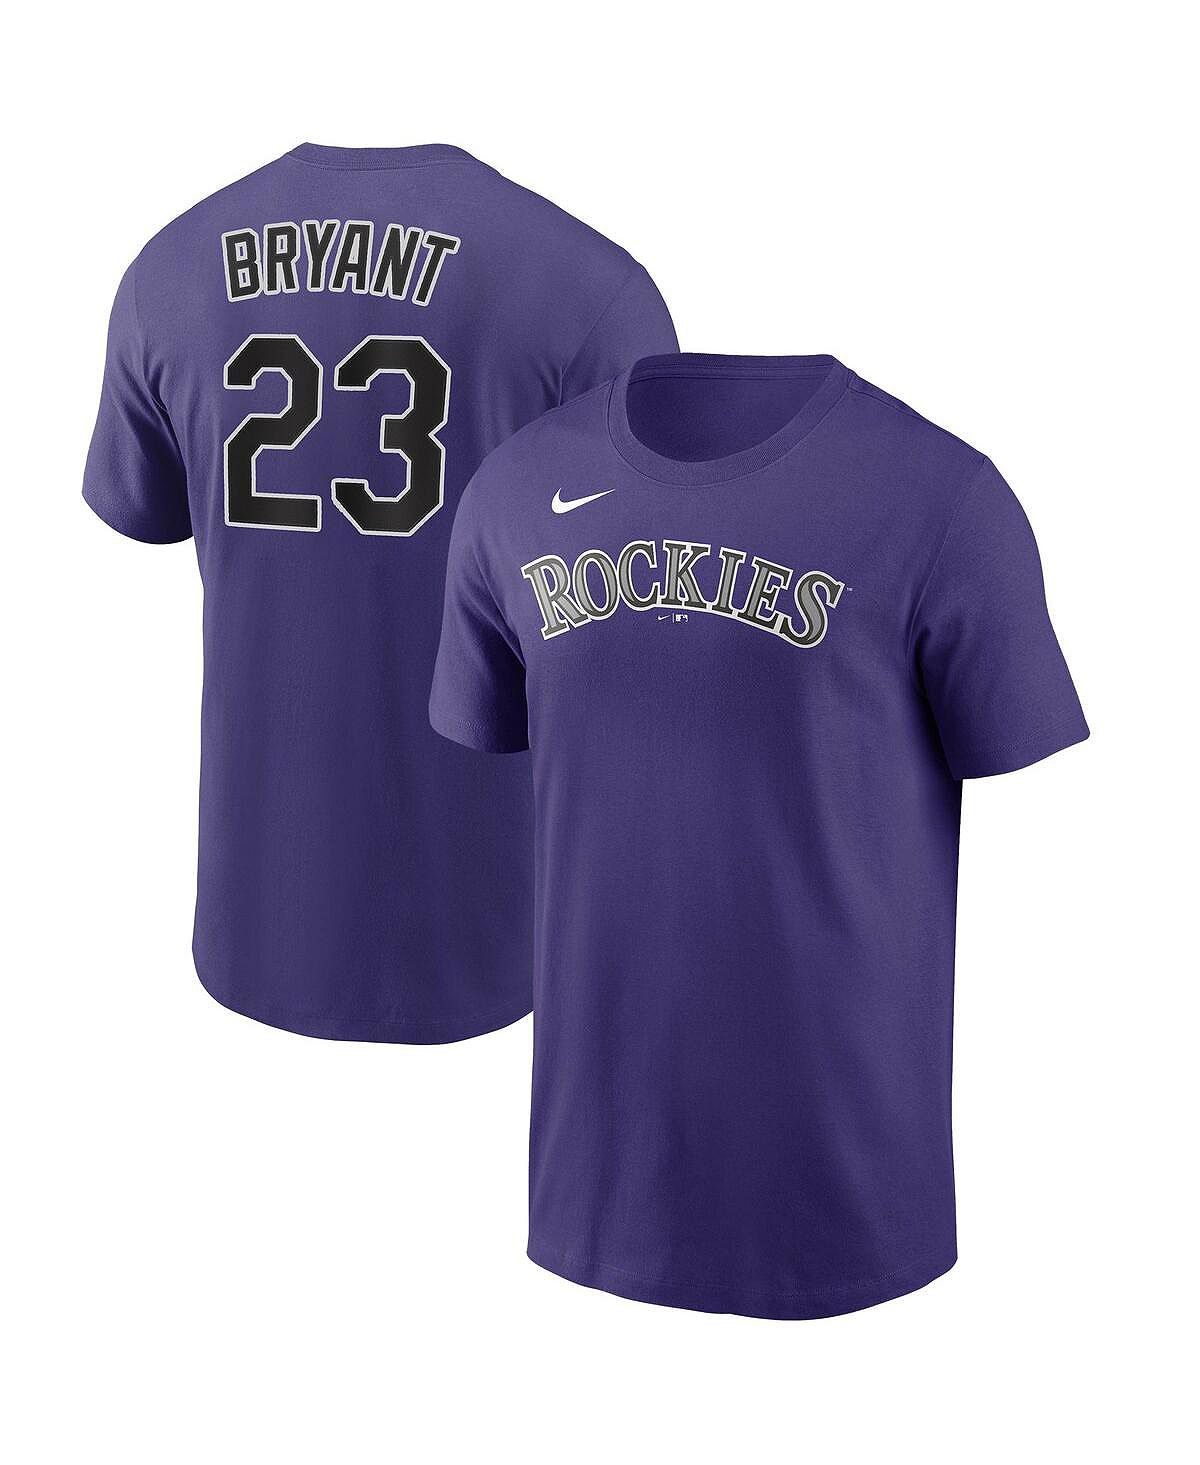 Мужская футболка kris bryant purple colorado rockies с именем и номером игрока Nike, фиолетовый мужская футболка kris bryant purple colorado rockies с именем и номером игрока nike фиолетовый